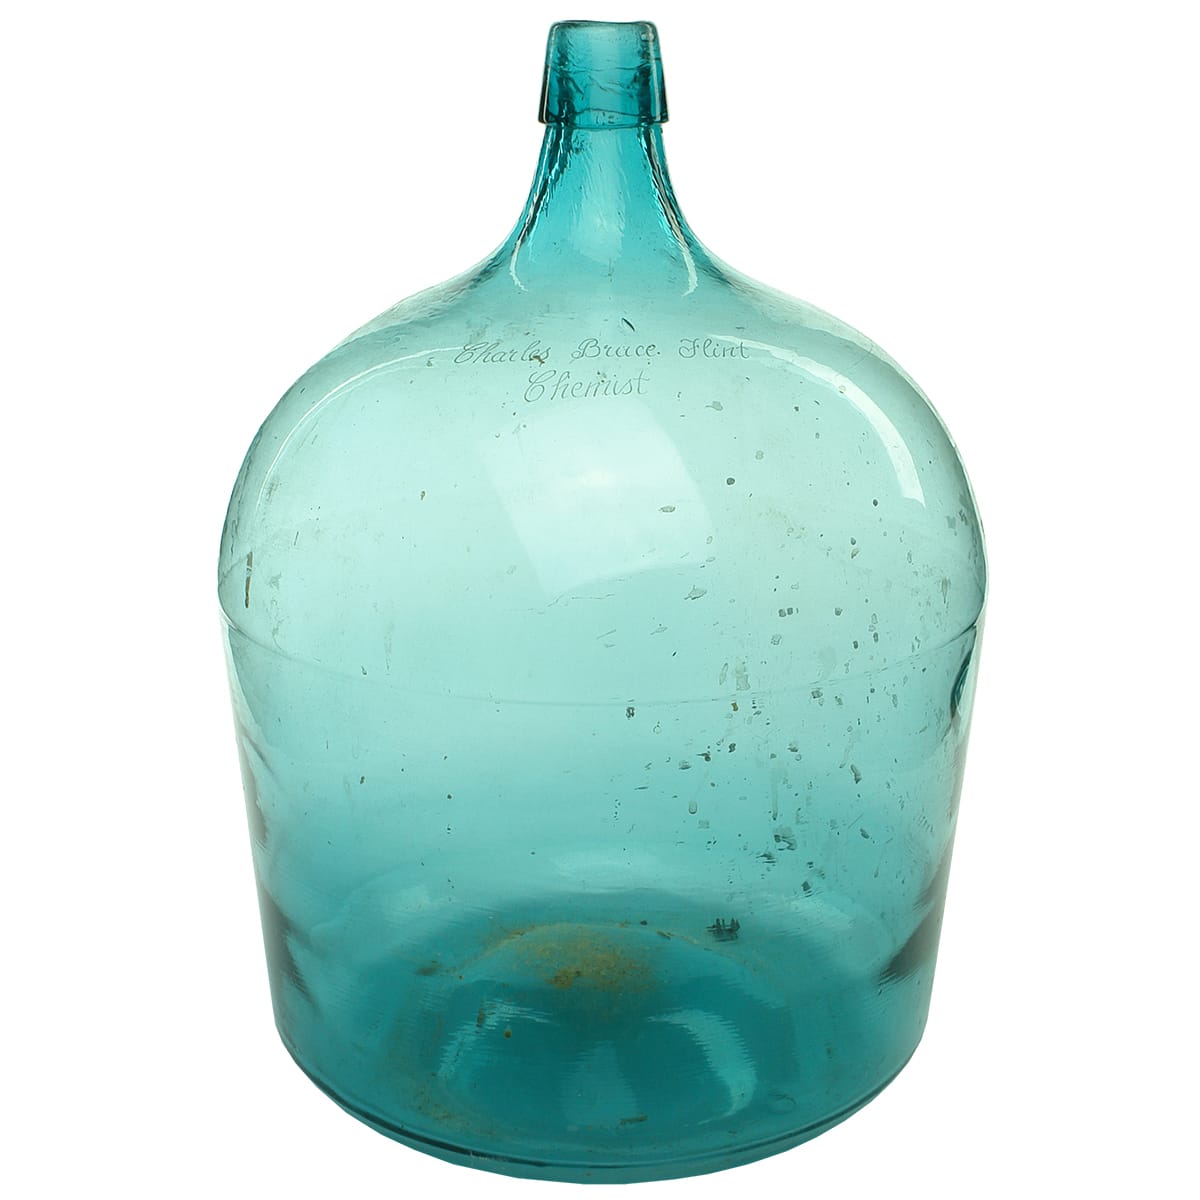 Demijohn. Charles Bruce Flint Chemist. Glass. Light Green. 3 gallon? (South Australia)